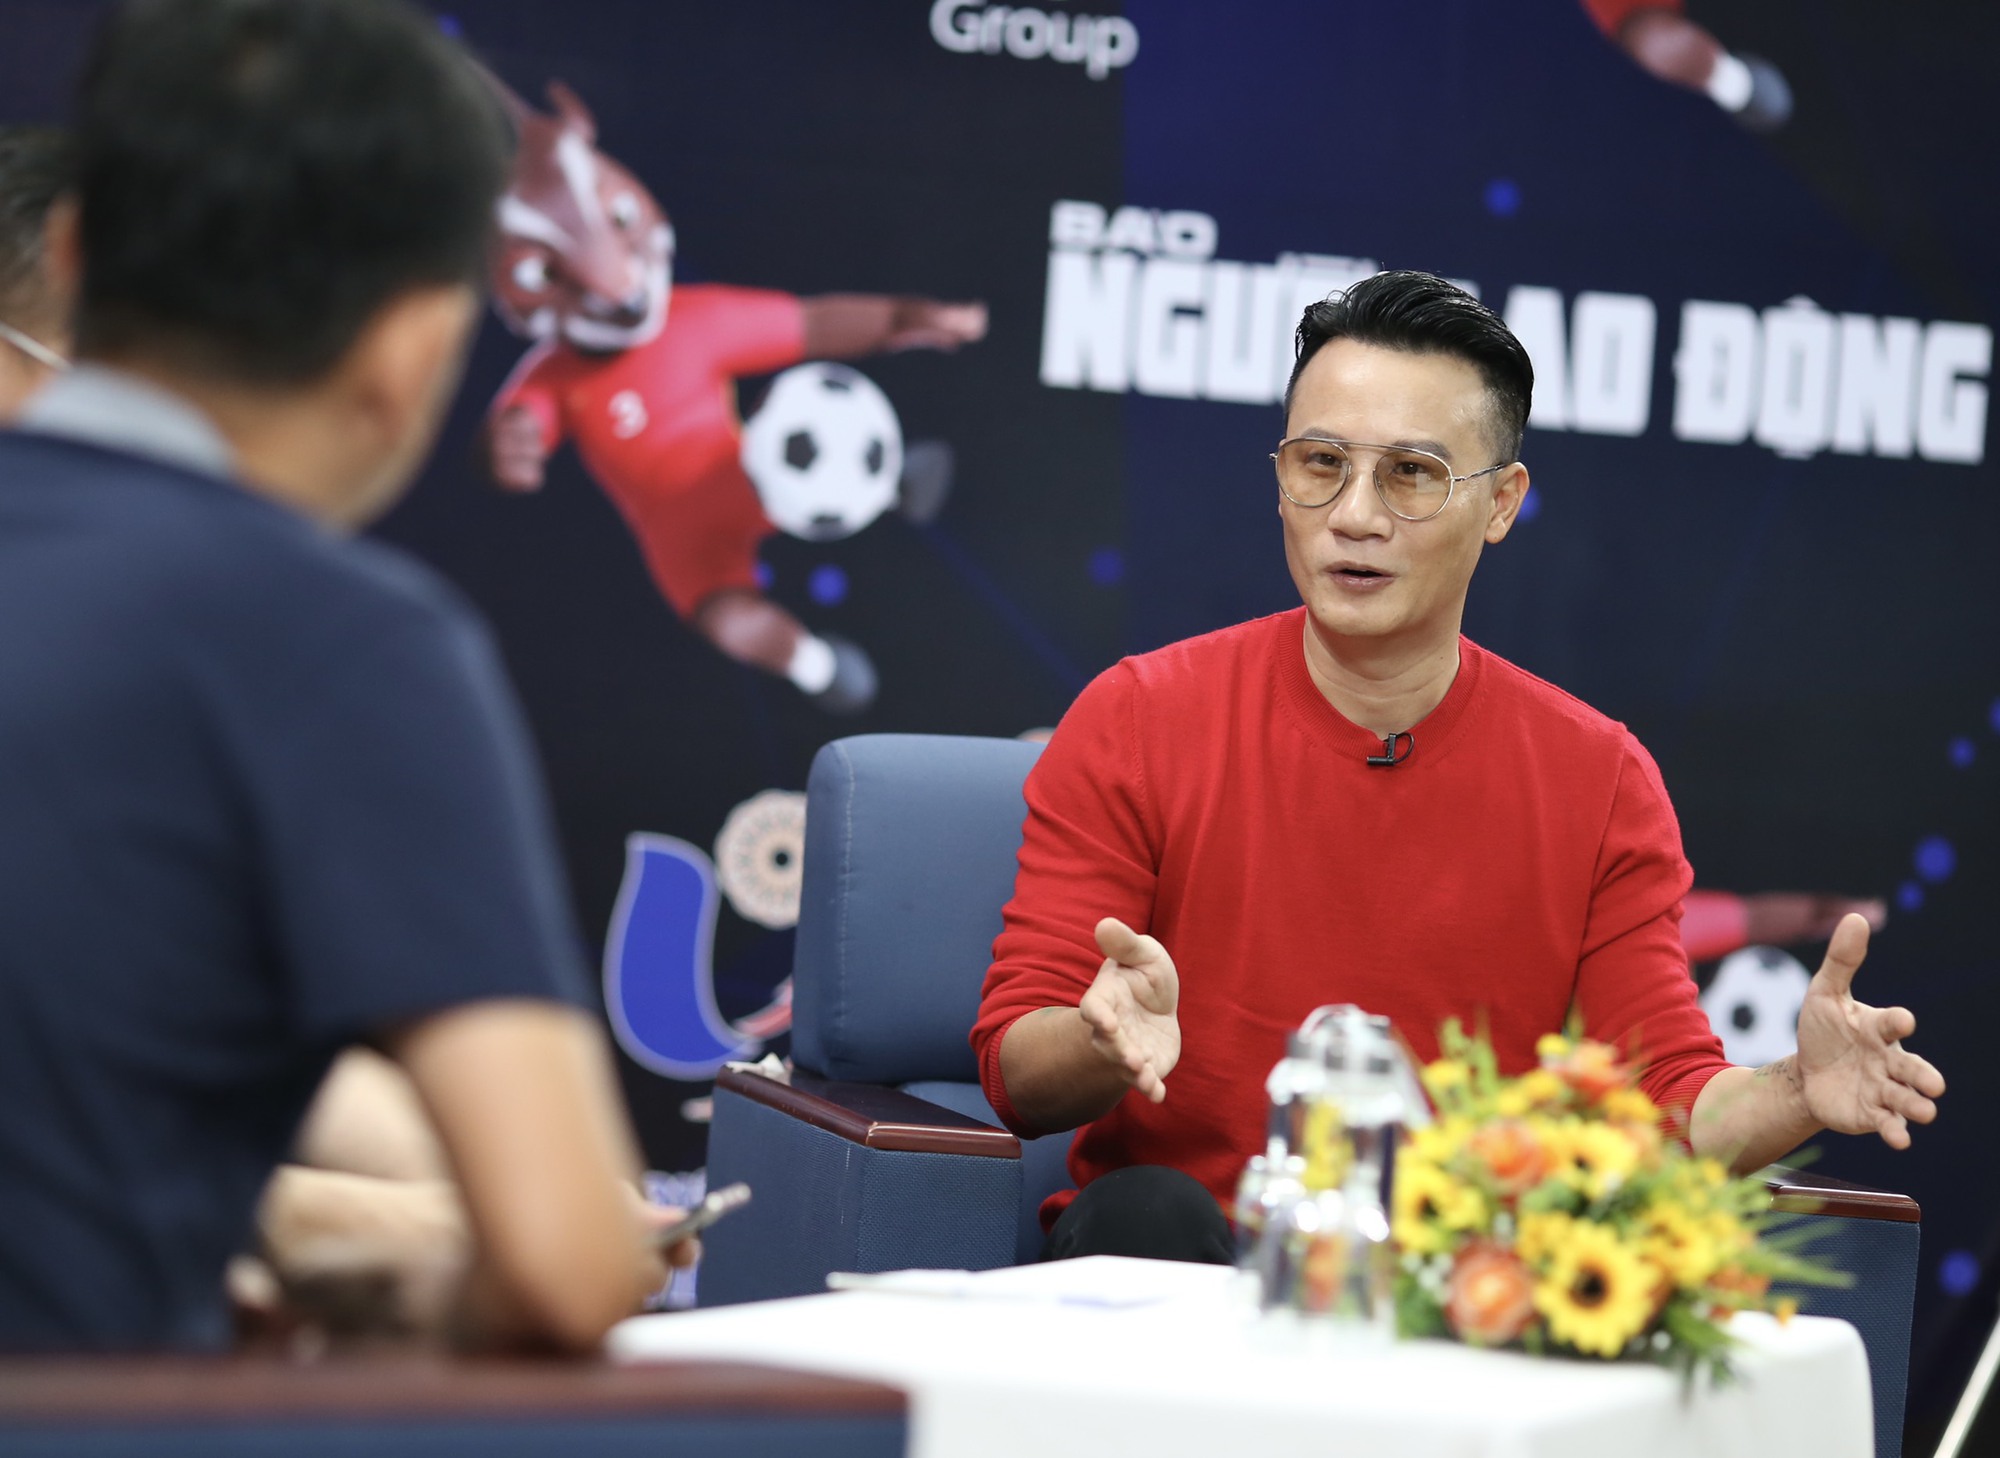 Bình luận bóng đá SEA Games 31: U23 Việt Nam mở toang cửa chung kết - Ảnh 3.